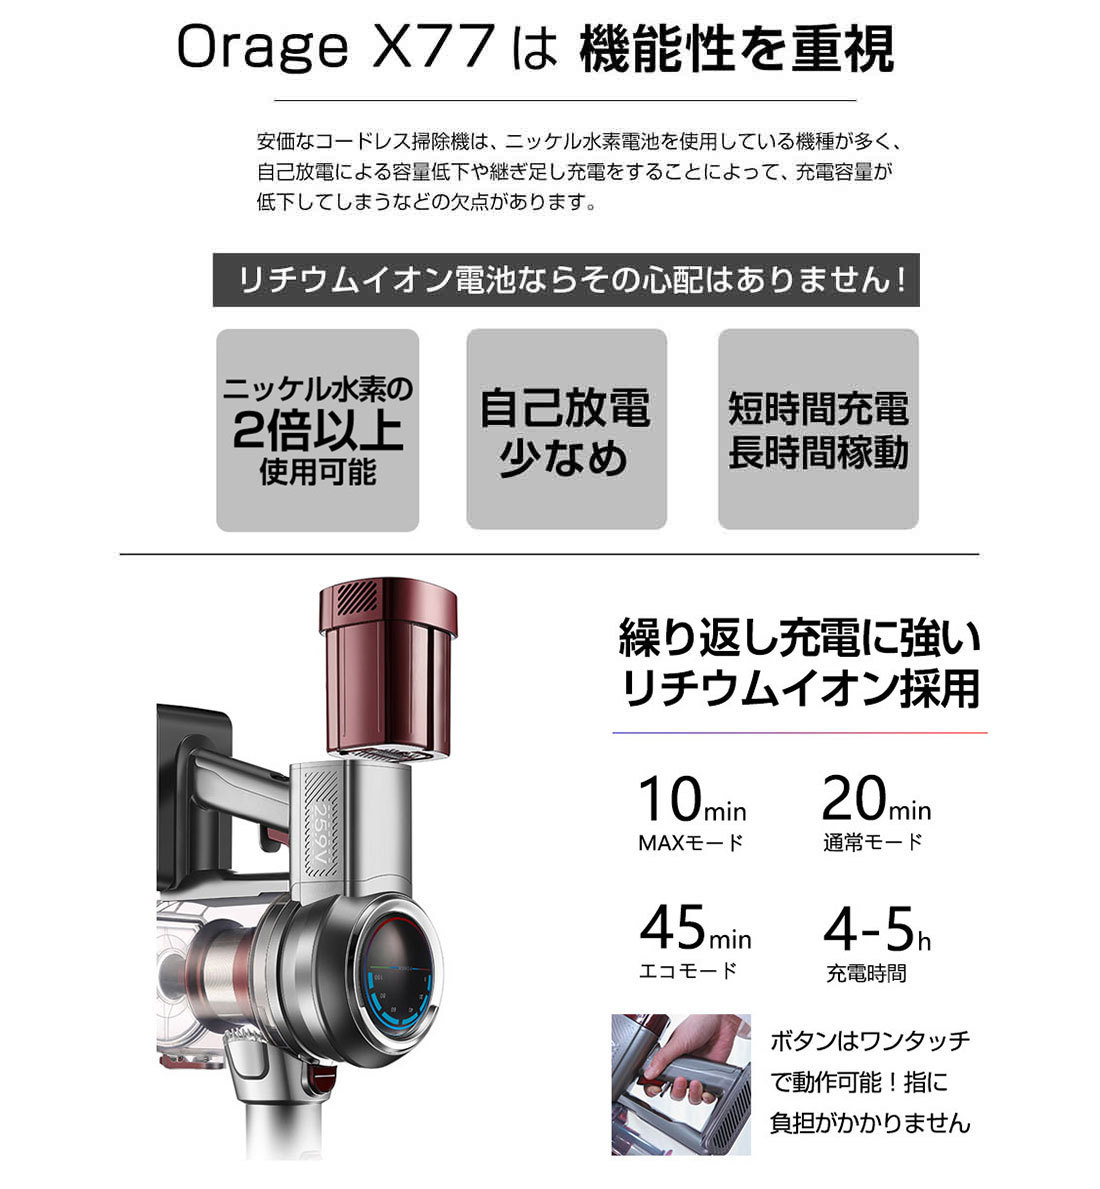 【売れ筋】 Orage X77 オラージュ 専用 HEPAフィルター X80 HEPA フィルター tepsa.com.pe